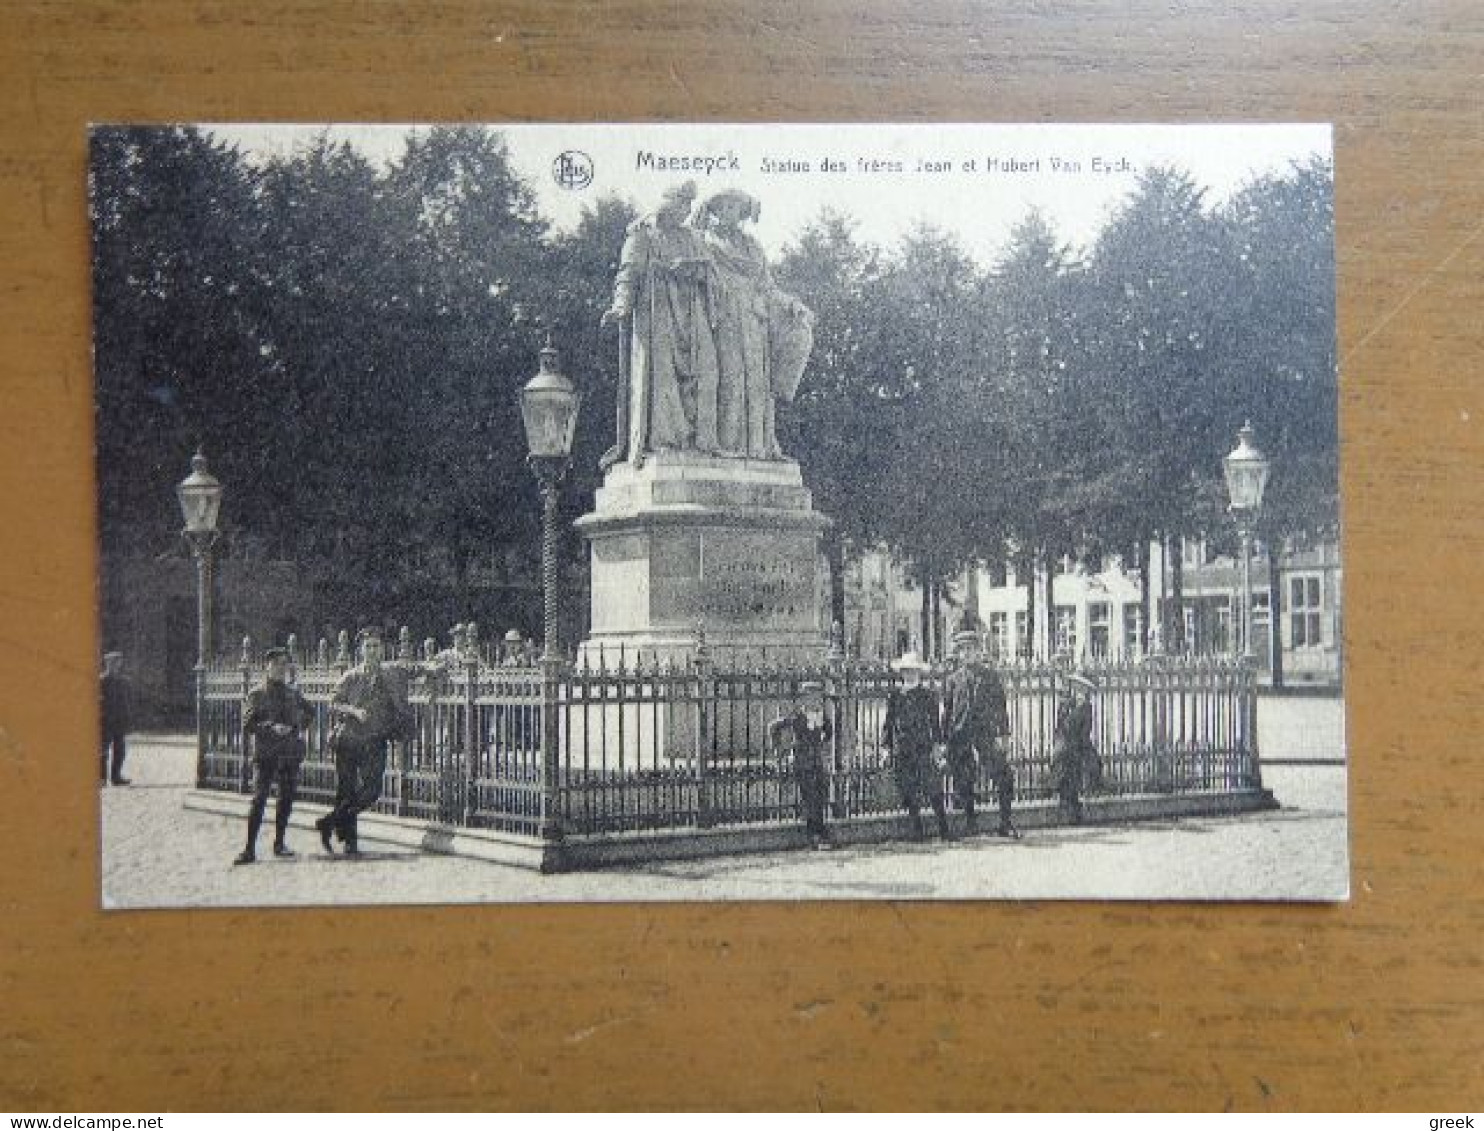 Maaseik: Statue Des Frères Jean Et Hubert Van Eyck -> Onbeschreven - Maaseik